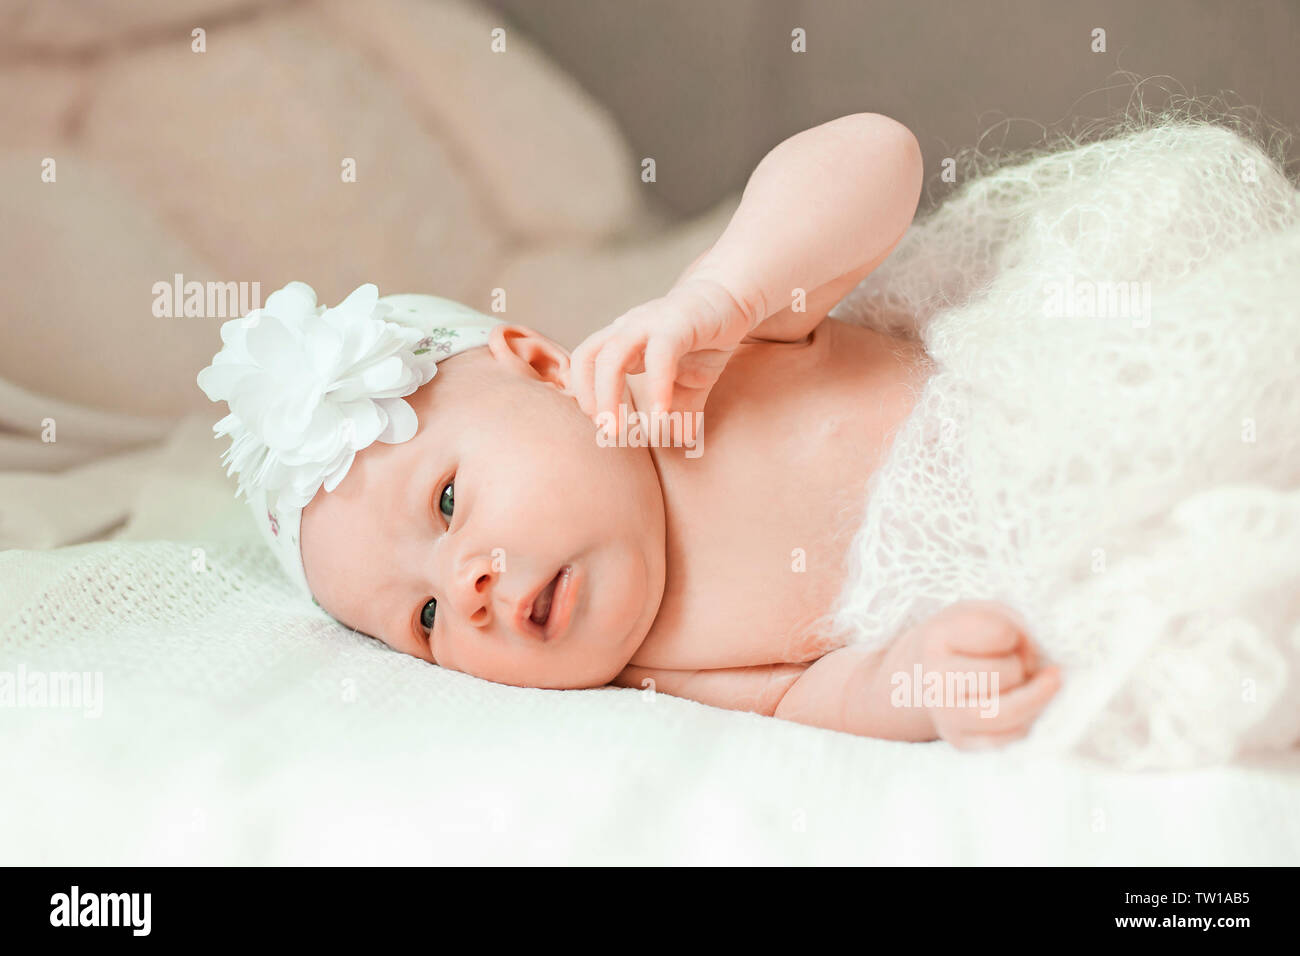 Una Adorable Bebé Recién Nacida En Una Manta Retrato De Un Hermoso Bebé Recién  Nacido Niña Recién Nacida En Cama Bebé Sano Poco D Imagen de archivo -  Imagen de belleza, hija